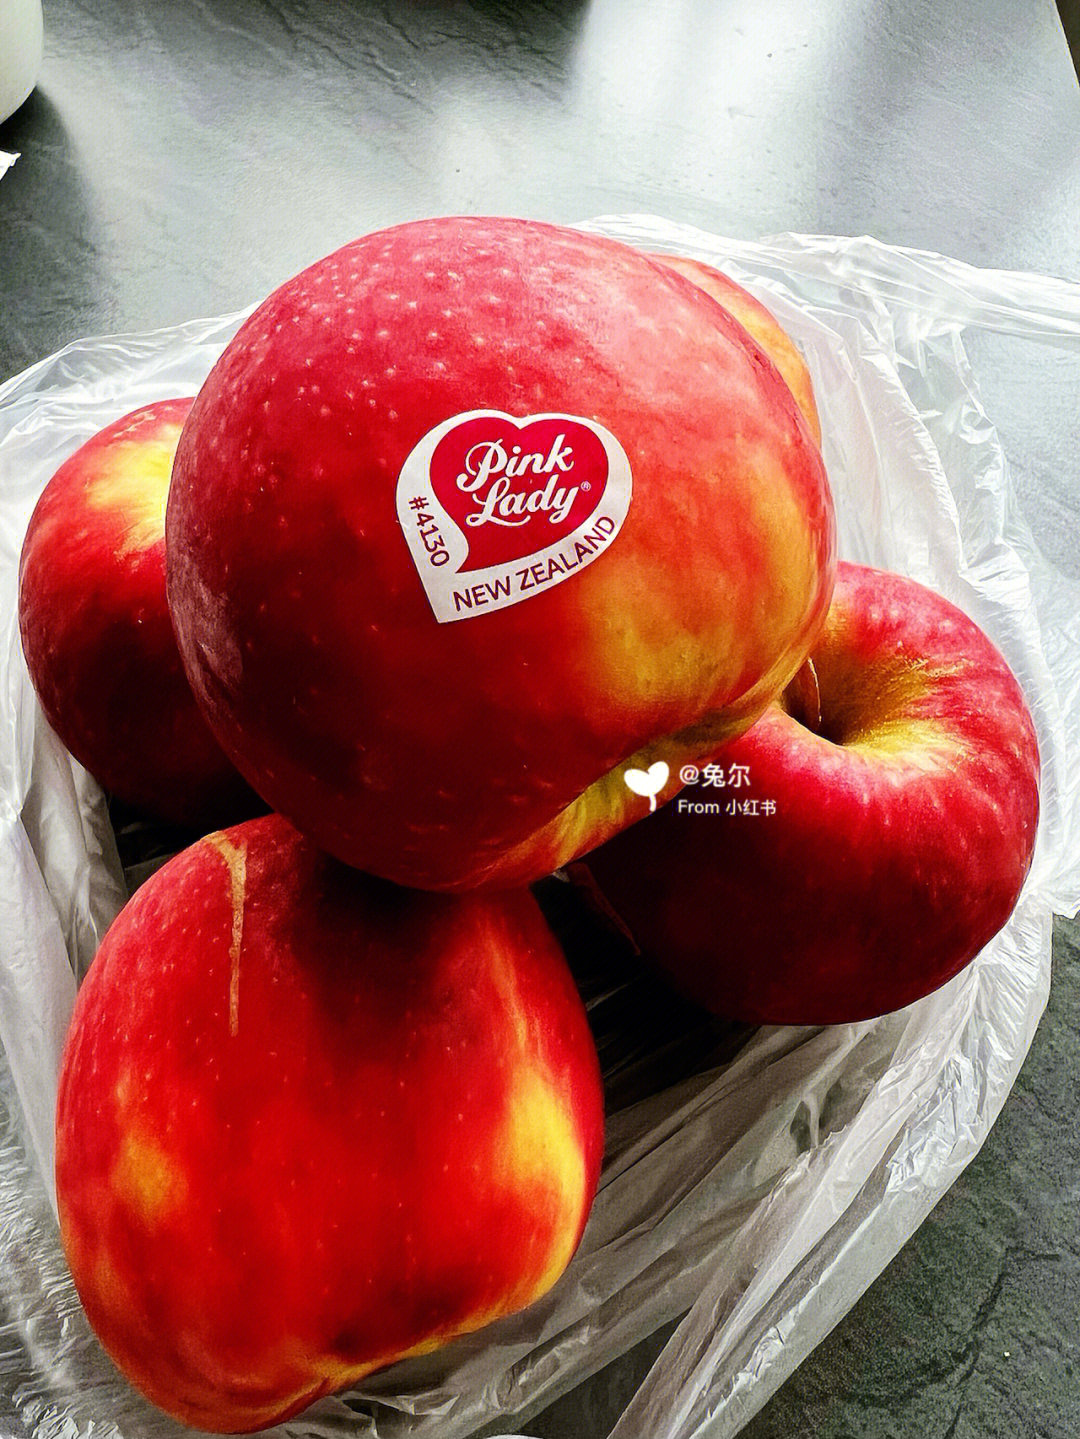 水果吧 一言难尽 好吃的贼好吃 不好吃的…比如苹果…刚开始买的时候